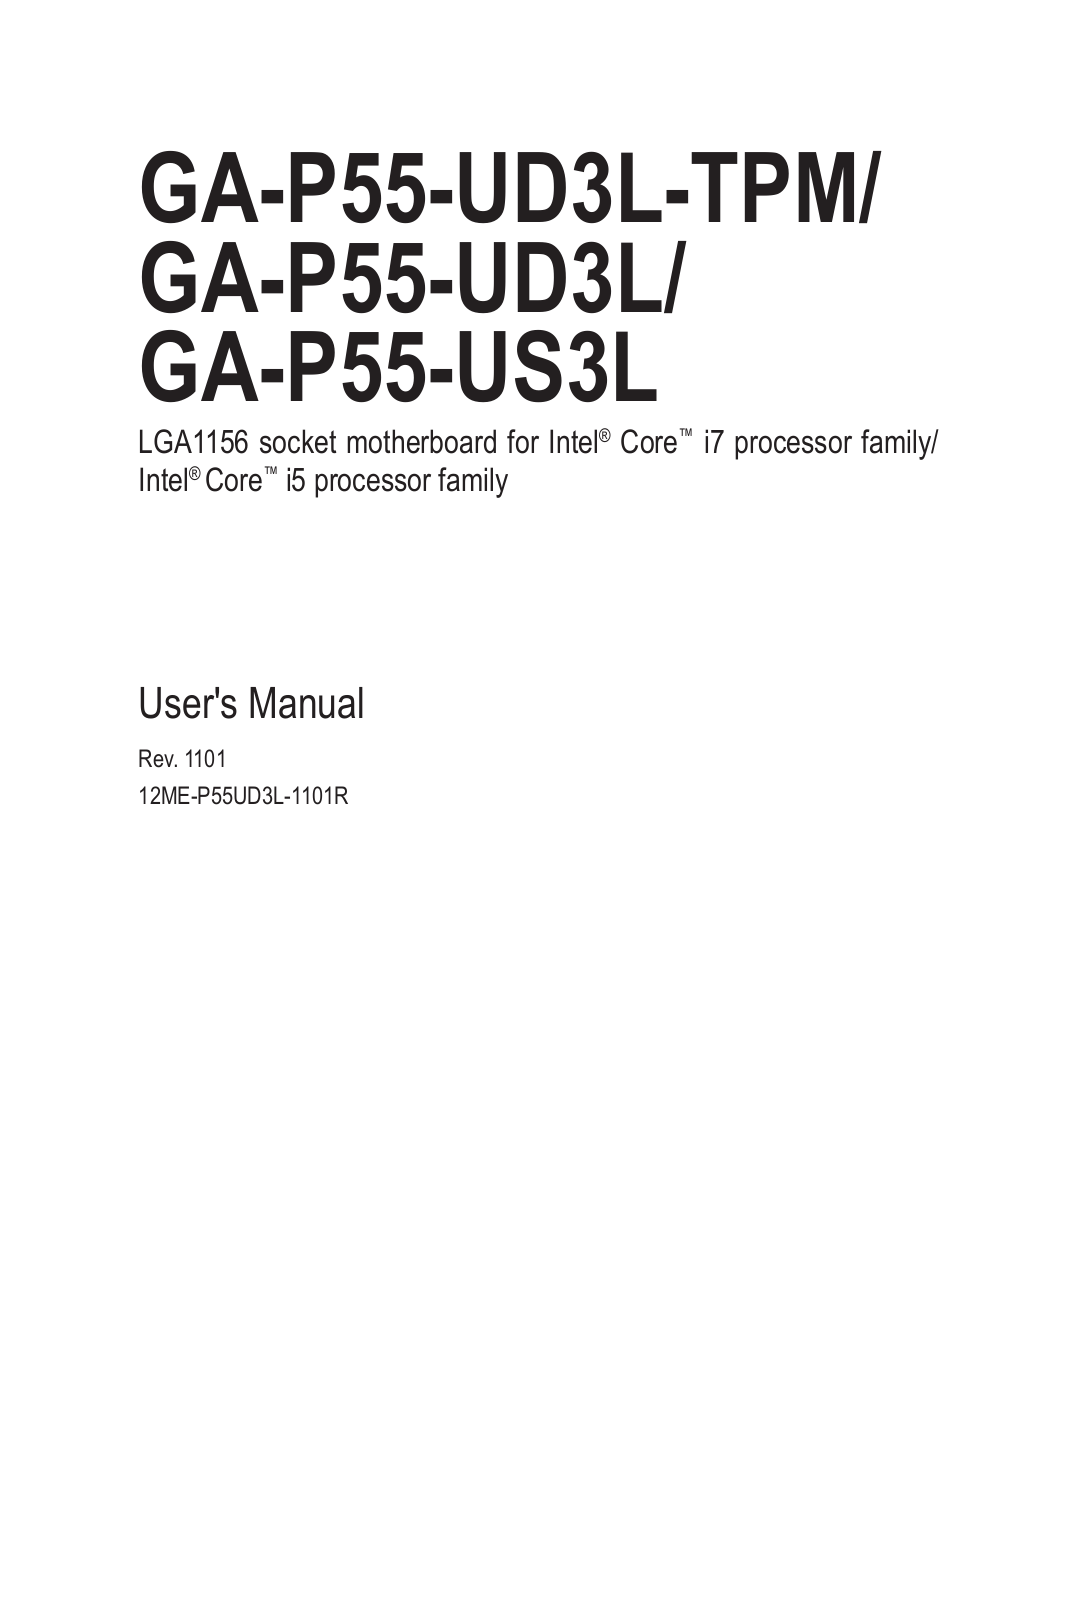 Gigabyte GA-P55-UD3L-TPM (rev. 1.1), GA-P55-UD3L (rev. 1.1), GA-P55-US3L (rev. 1.1) User Manual